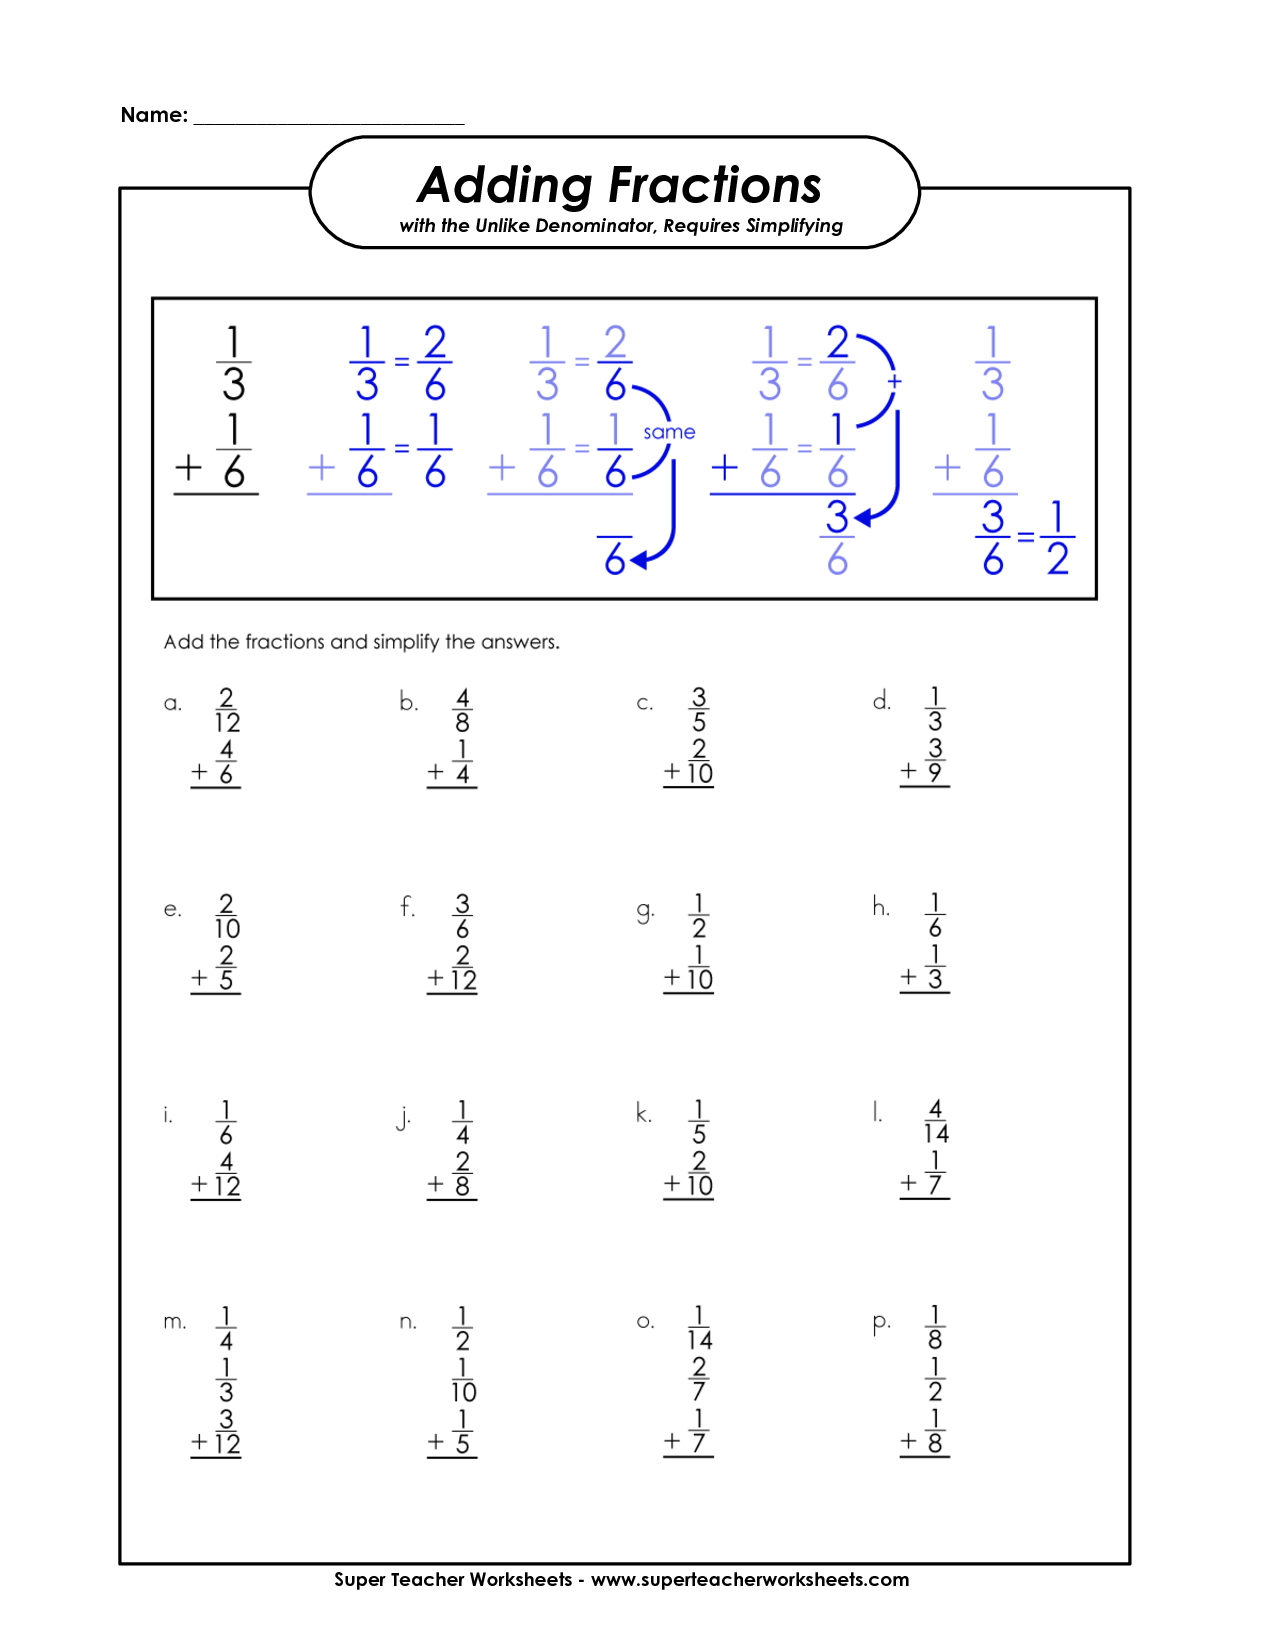 15 Best Images Of Super Teacher Worksheets Patterns 3rd Grade Free Fraction Worksheets Adding